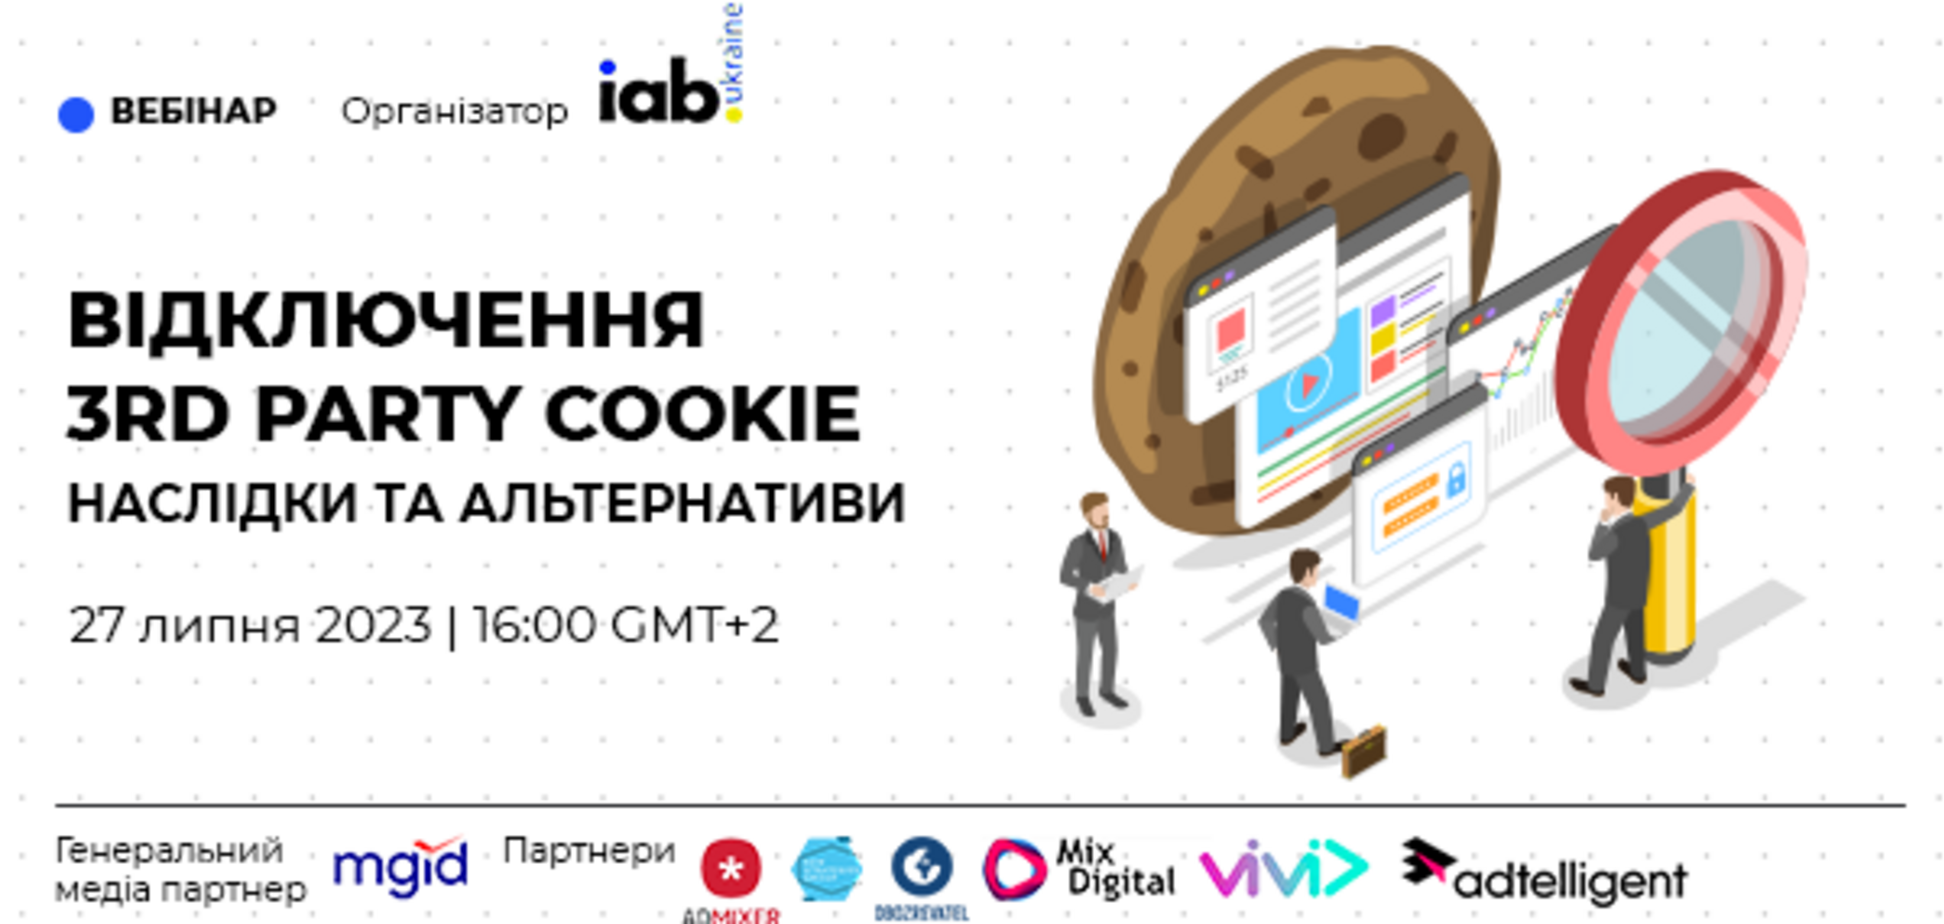 Отключение 3d party cookie: в Украине проведут вебинар о последствиях и альтернативах